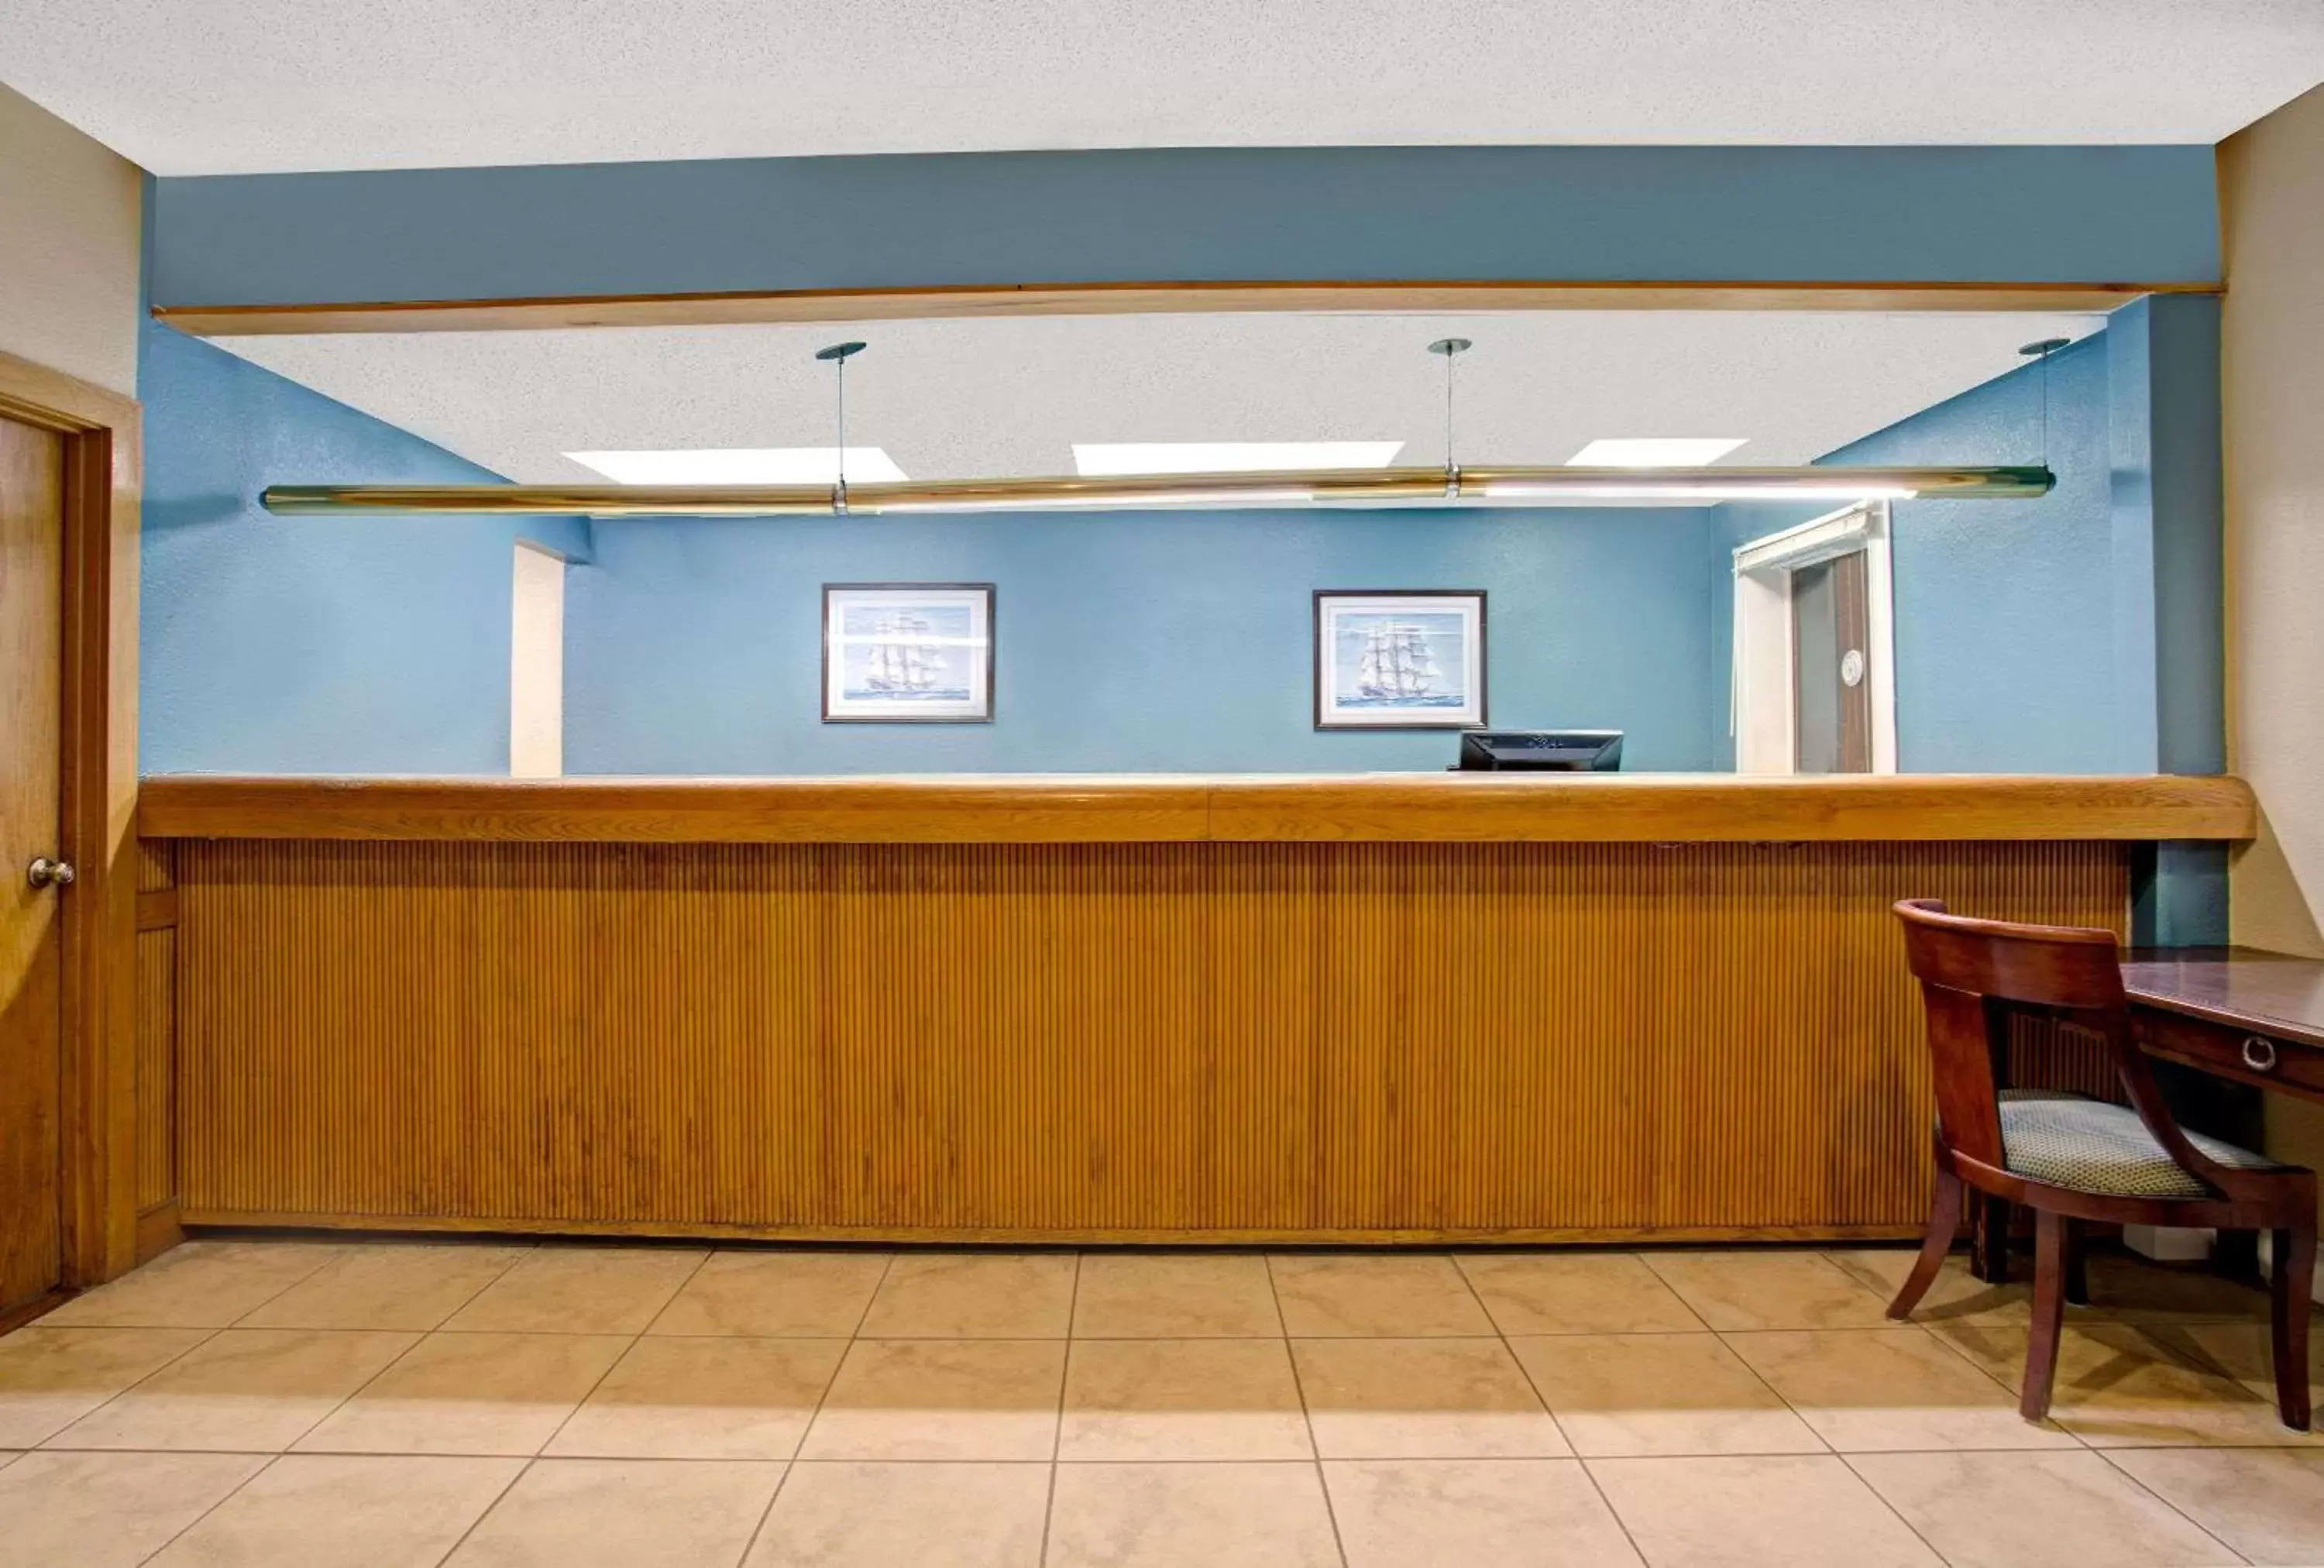 Lobby or reception, Lobby/Reception in Super 8 by Wyndham Norfolk/Chesapeake Bay